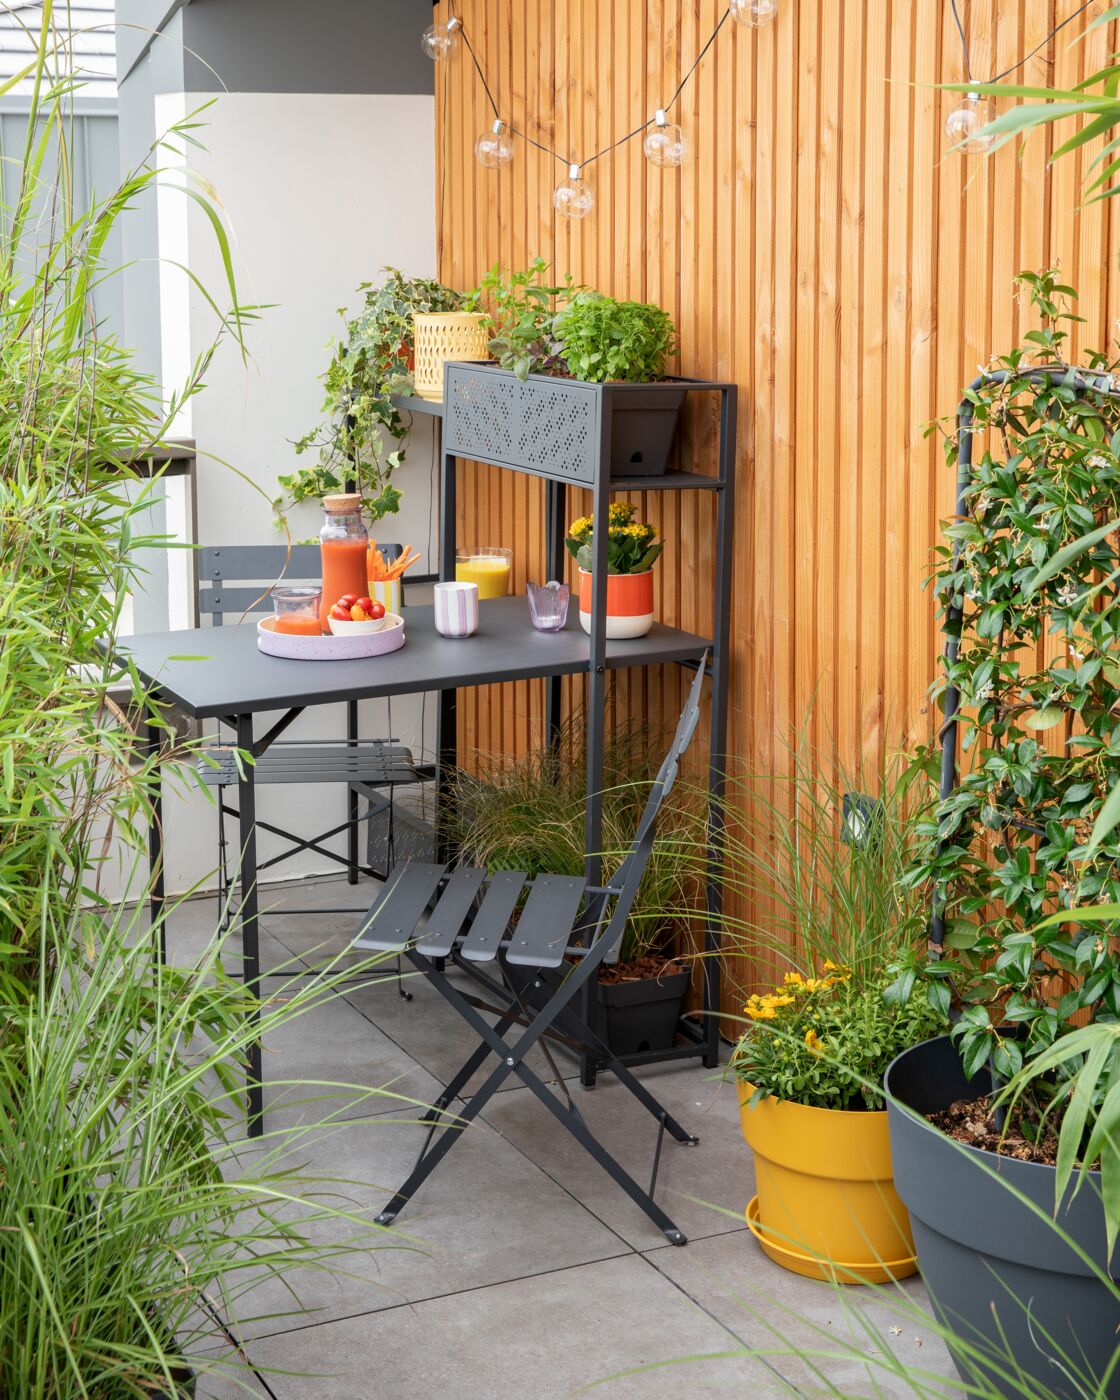 comment aménager son balcon ou son jardin quand on a peu d'espace ?